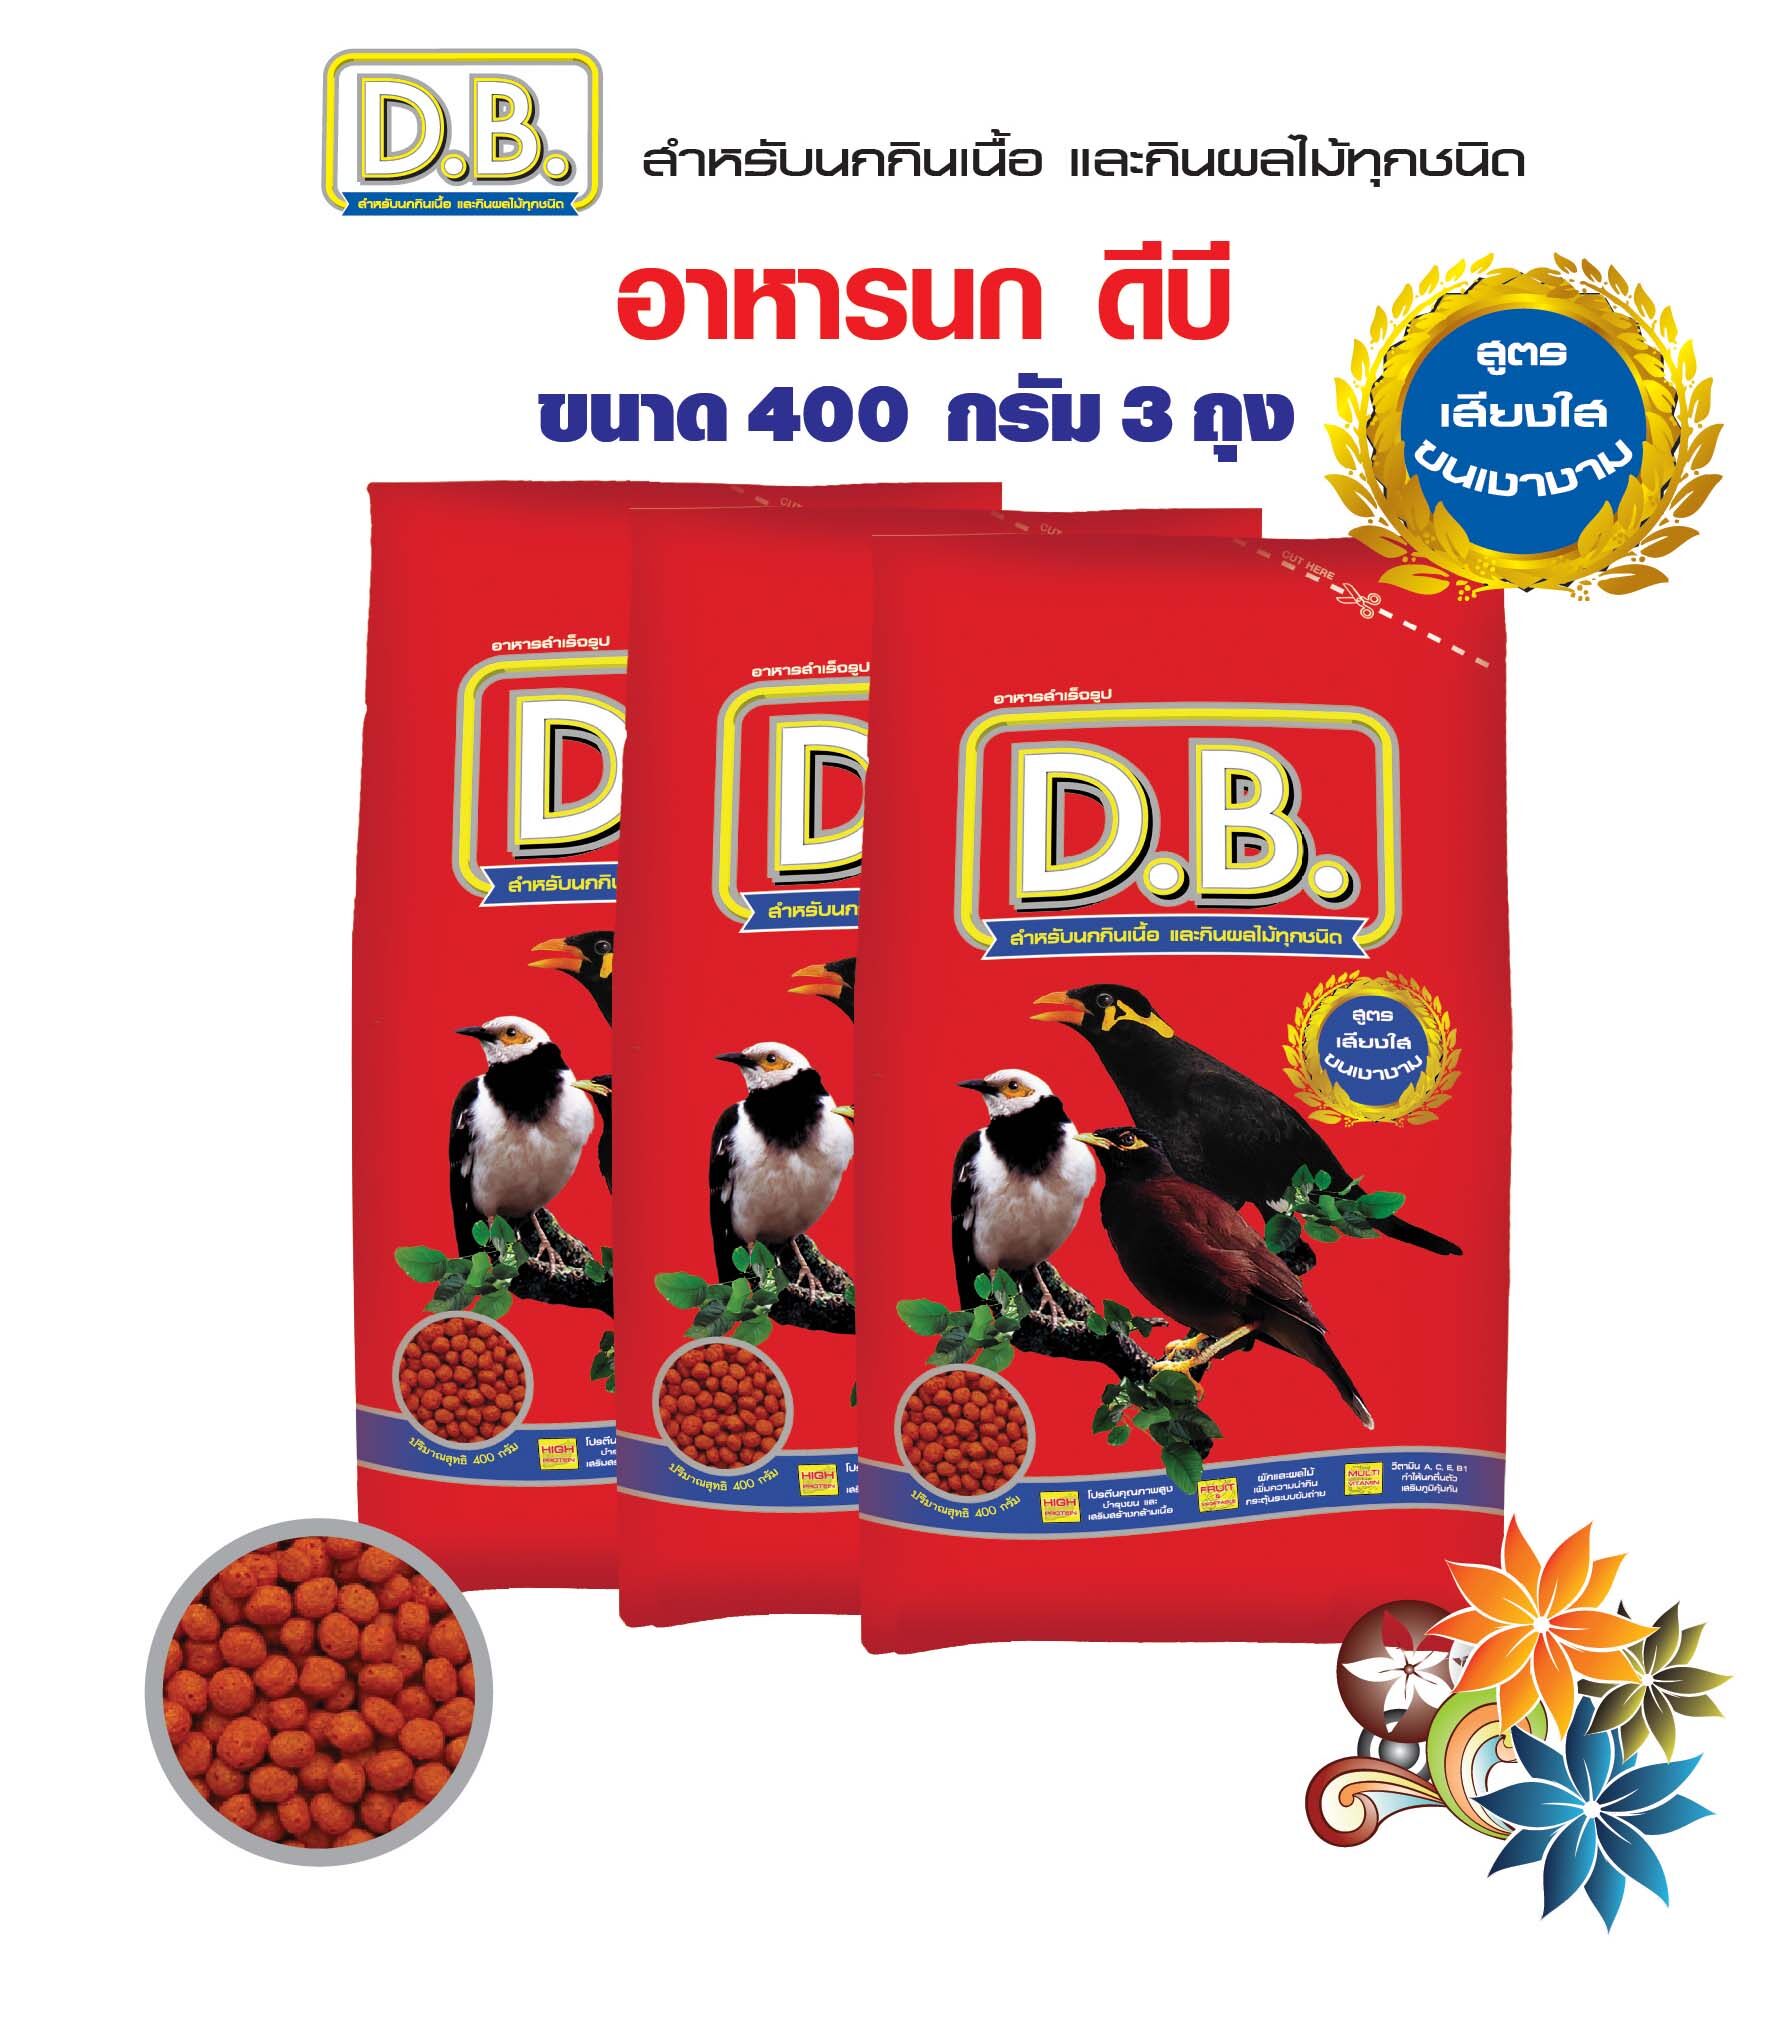 อาหารนก D.B. สำหรับนกกินเนื้อ และกินผลไม้ ขนาด 400 กรัม จำนวน 3 ถุง